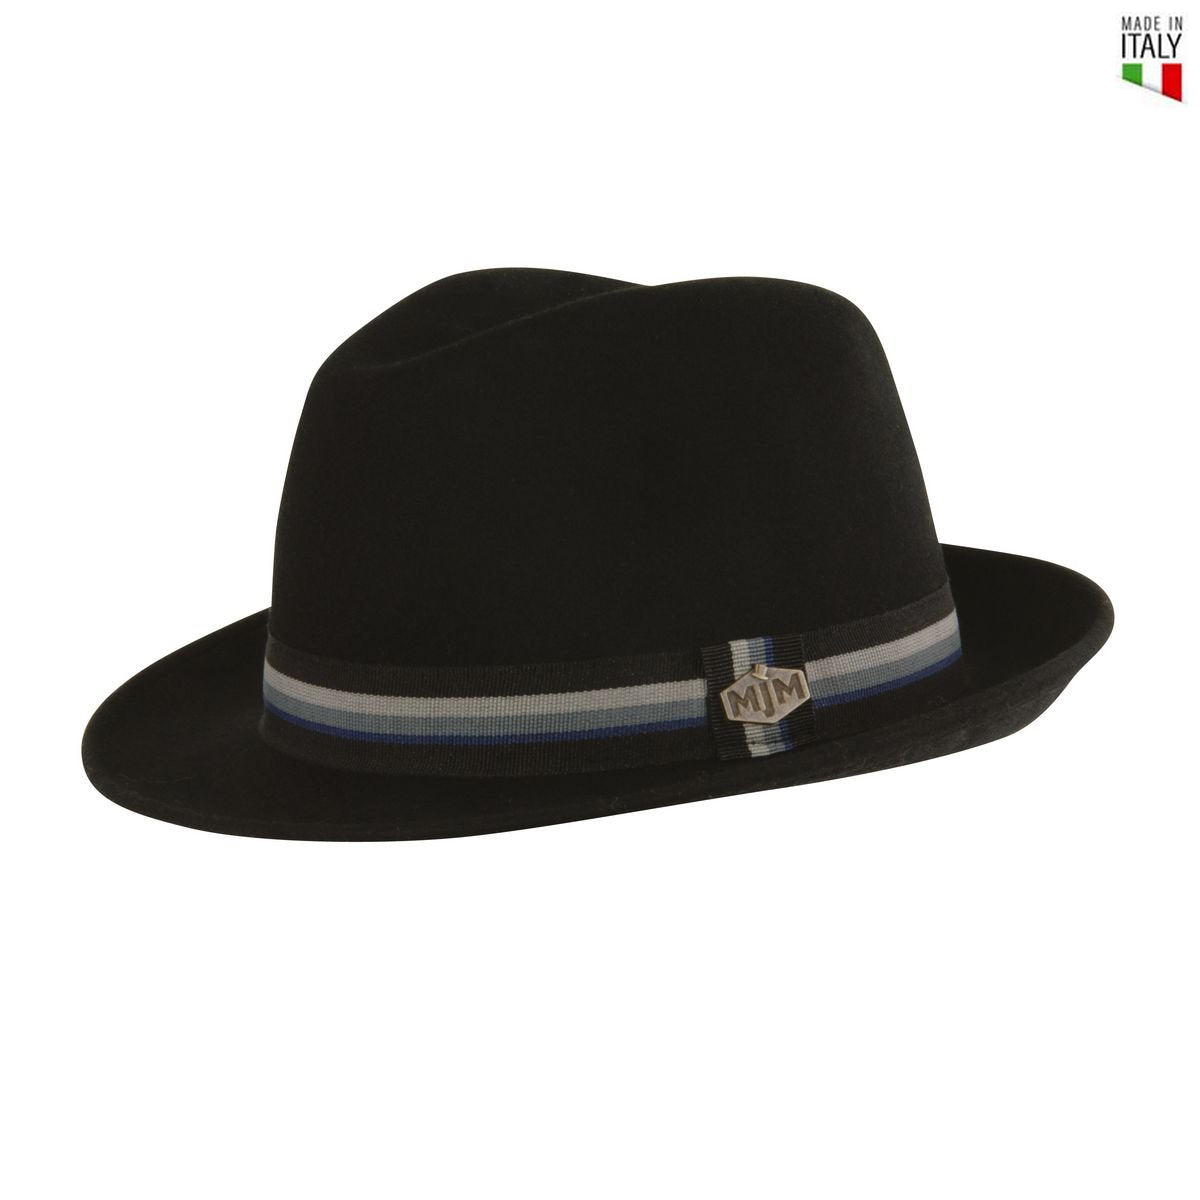 MJM Oscar Trilby Filt Hat - Sort - Trilby Hat fra MJM Hats hos The Prince Webshop